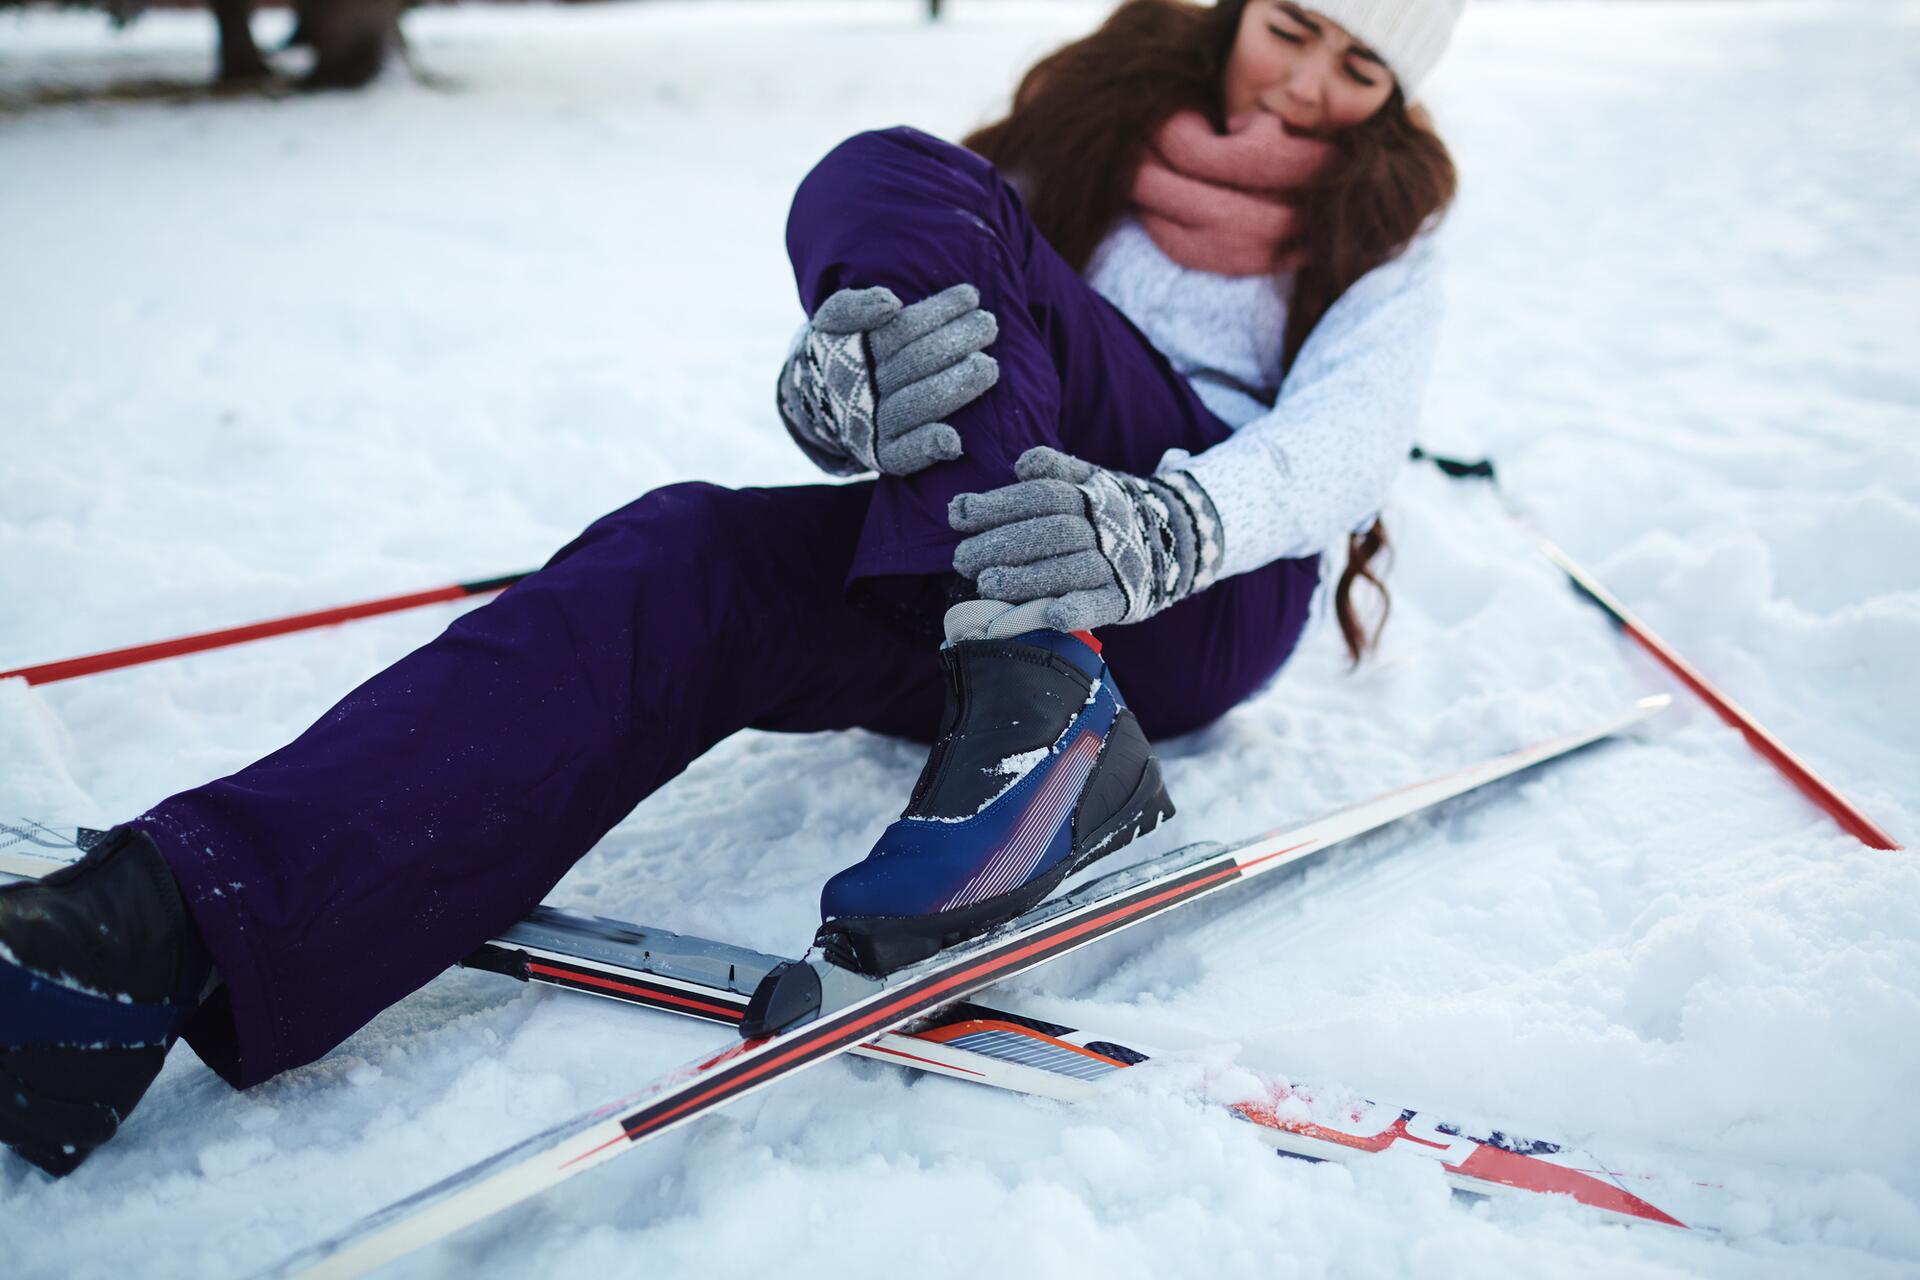 Poradíme s výběrem kvalitního cestovního pojištění na lyže